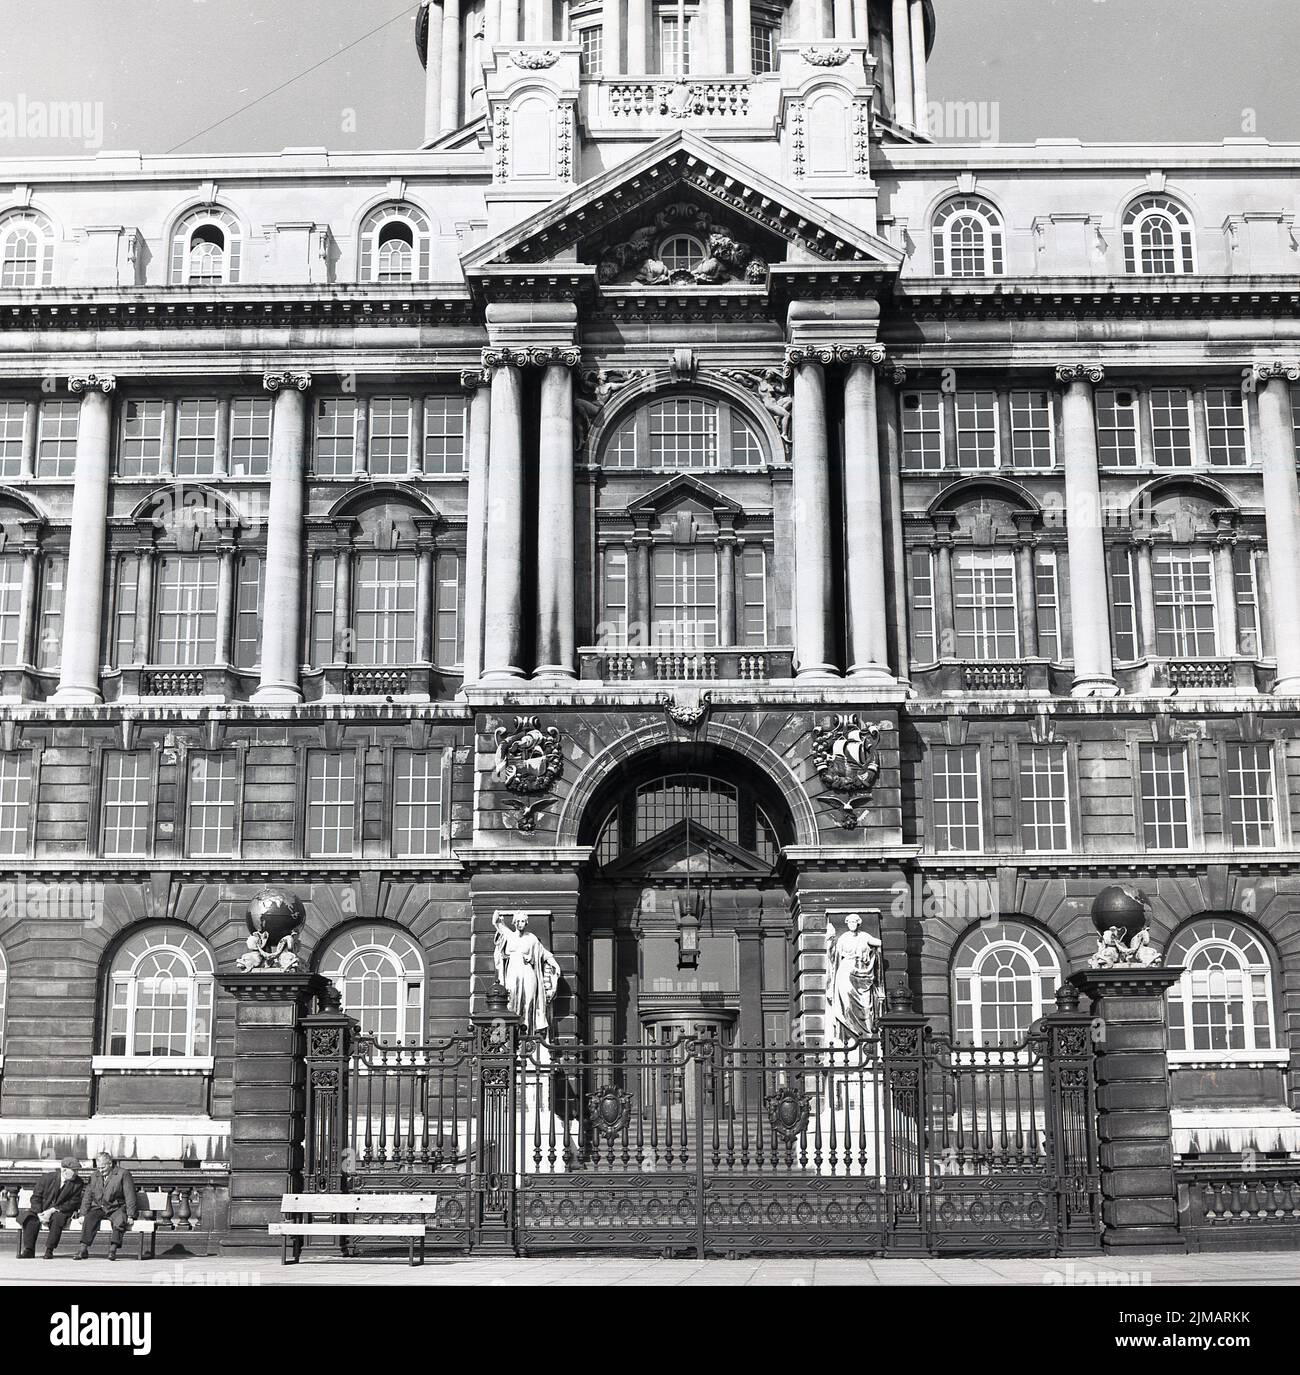 1960s, histórico, vista exterior del Liverpool Town Hall, Inglaterra, Reino Unido, dos hombres sentados en un banco fuera. Diseñado por John Wood, fue construido en 1749 y un ejemplo clásico de la arquitectura georgiana. Foto de stock